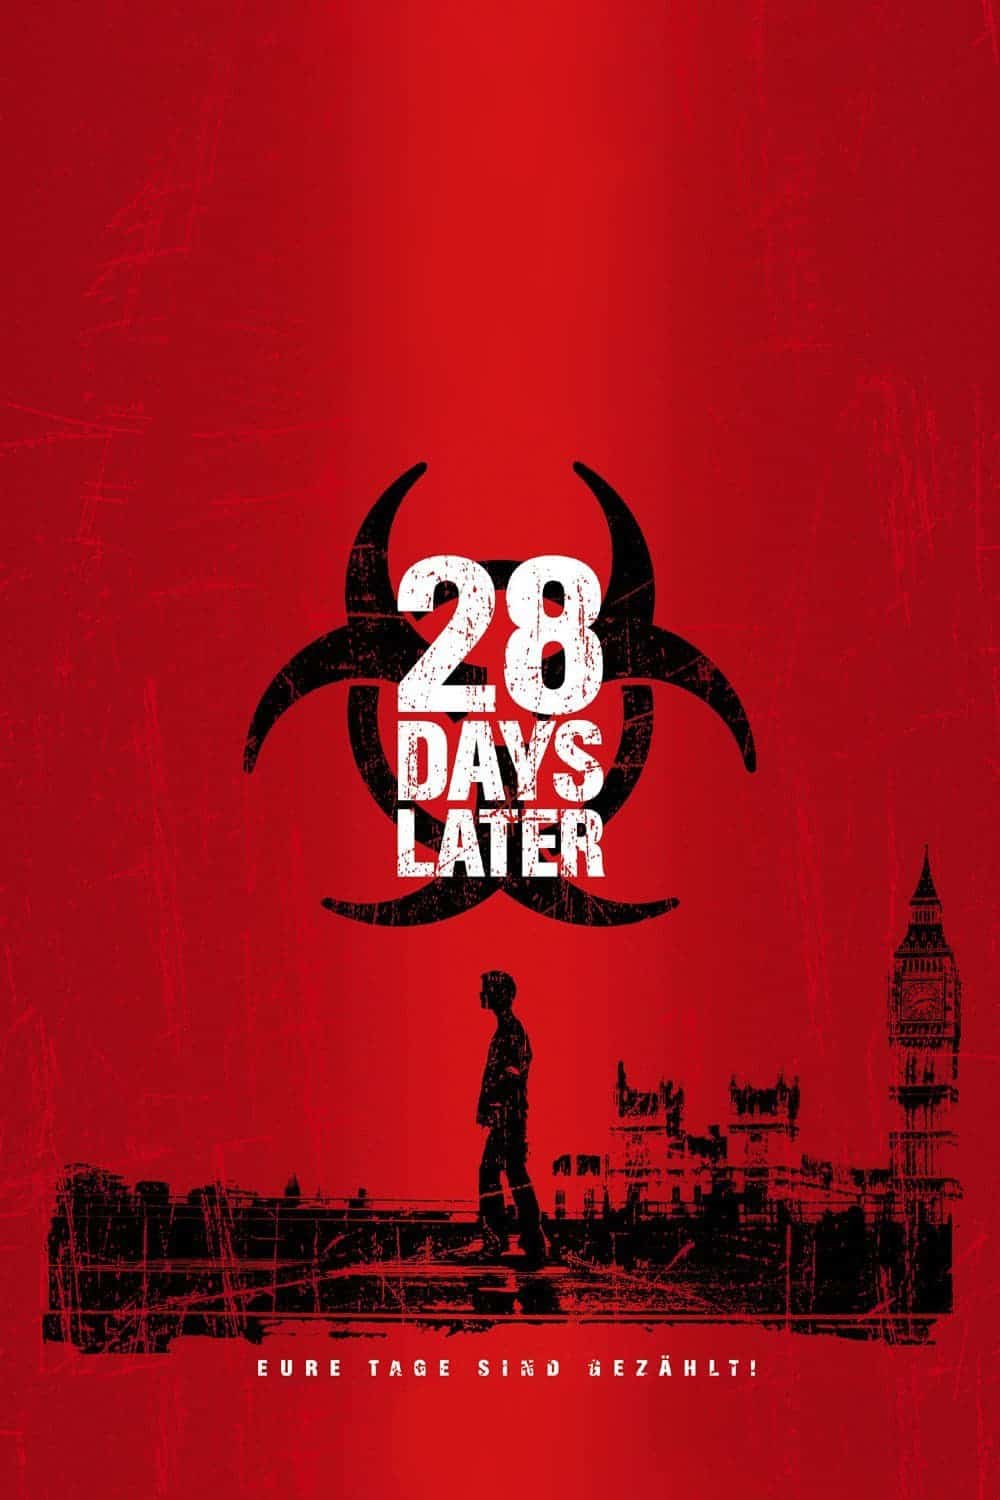 Plakat von "28 Days Later"